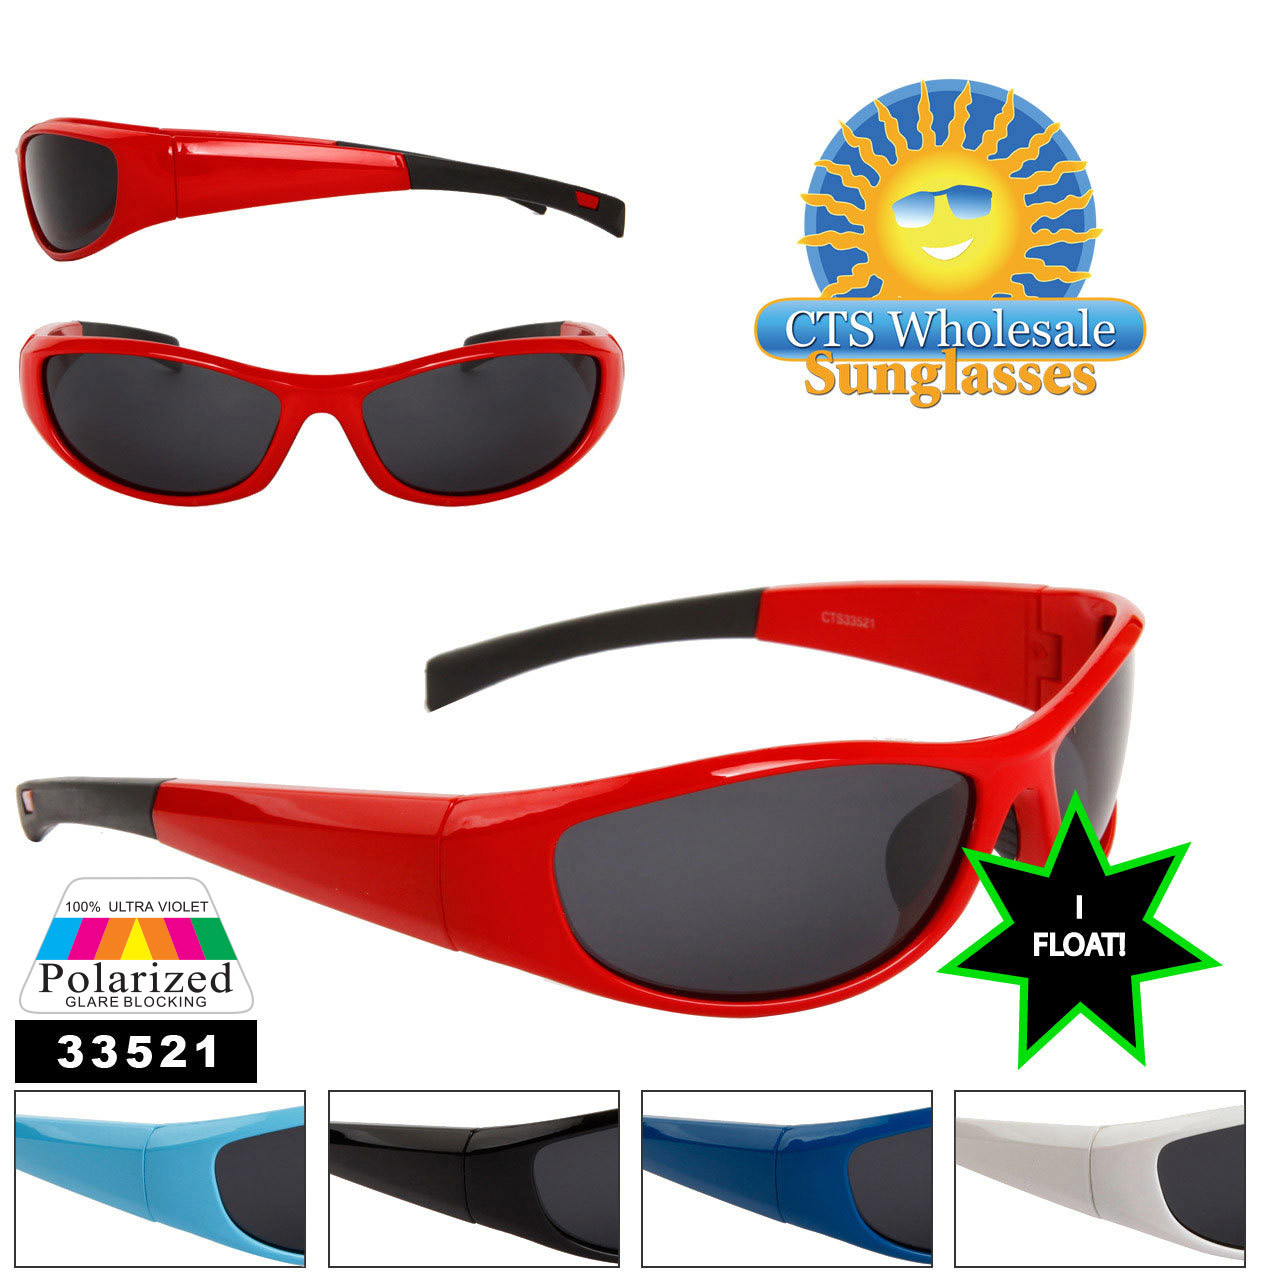 Floating Polarized Sunglasses, Polarized Fishing Sunglasses